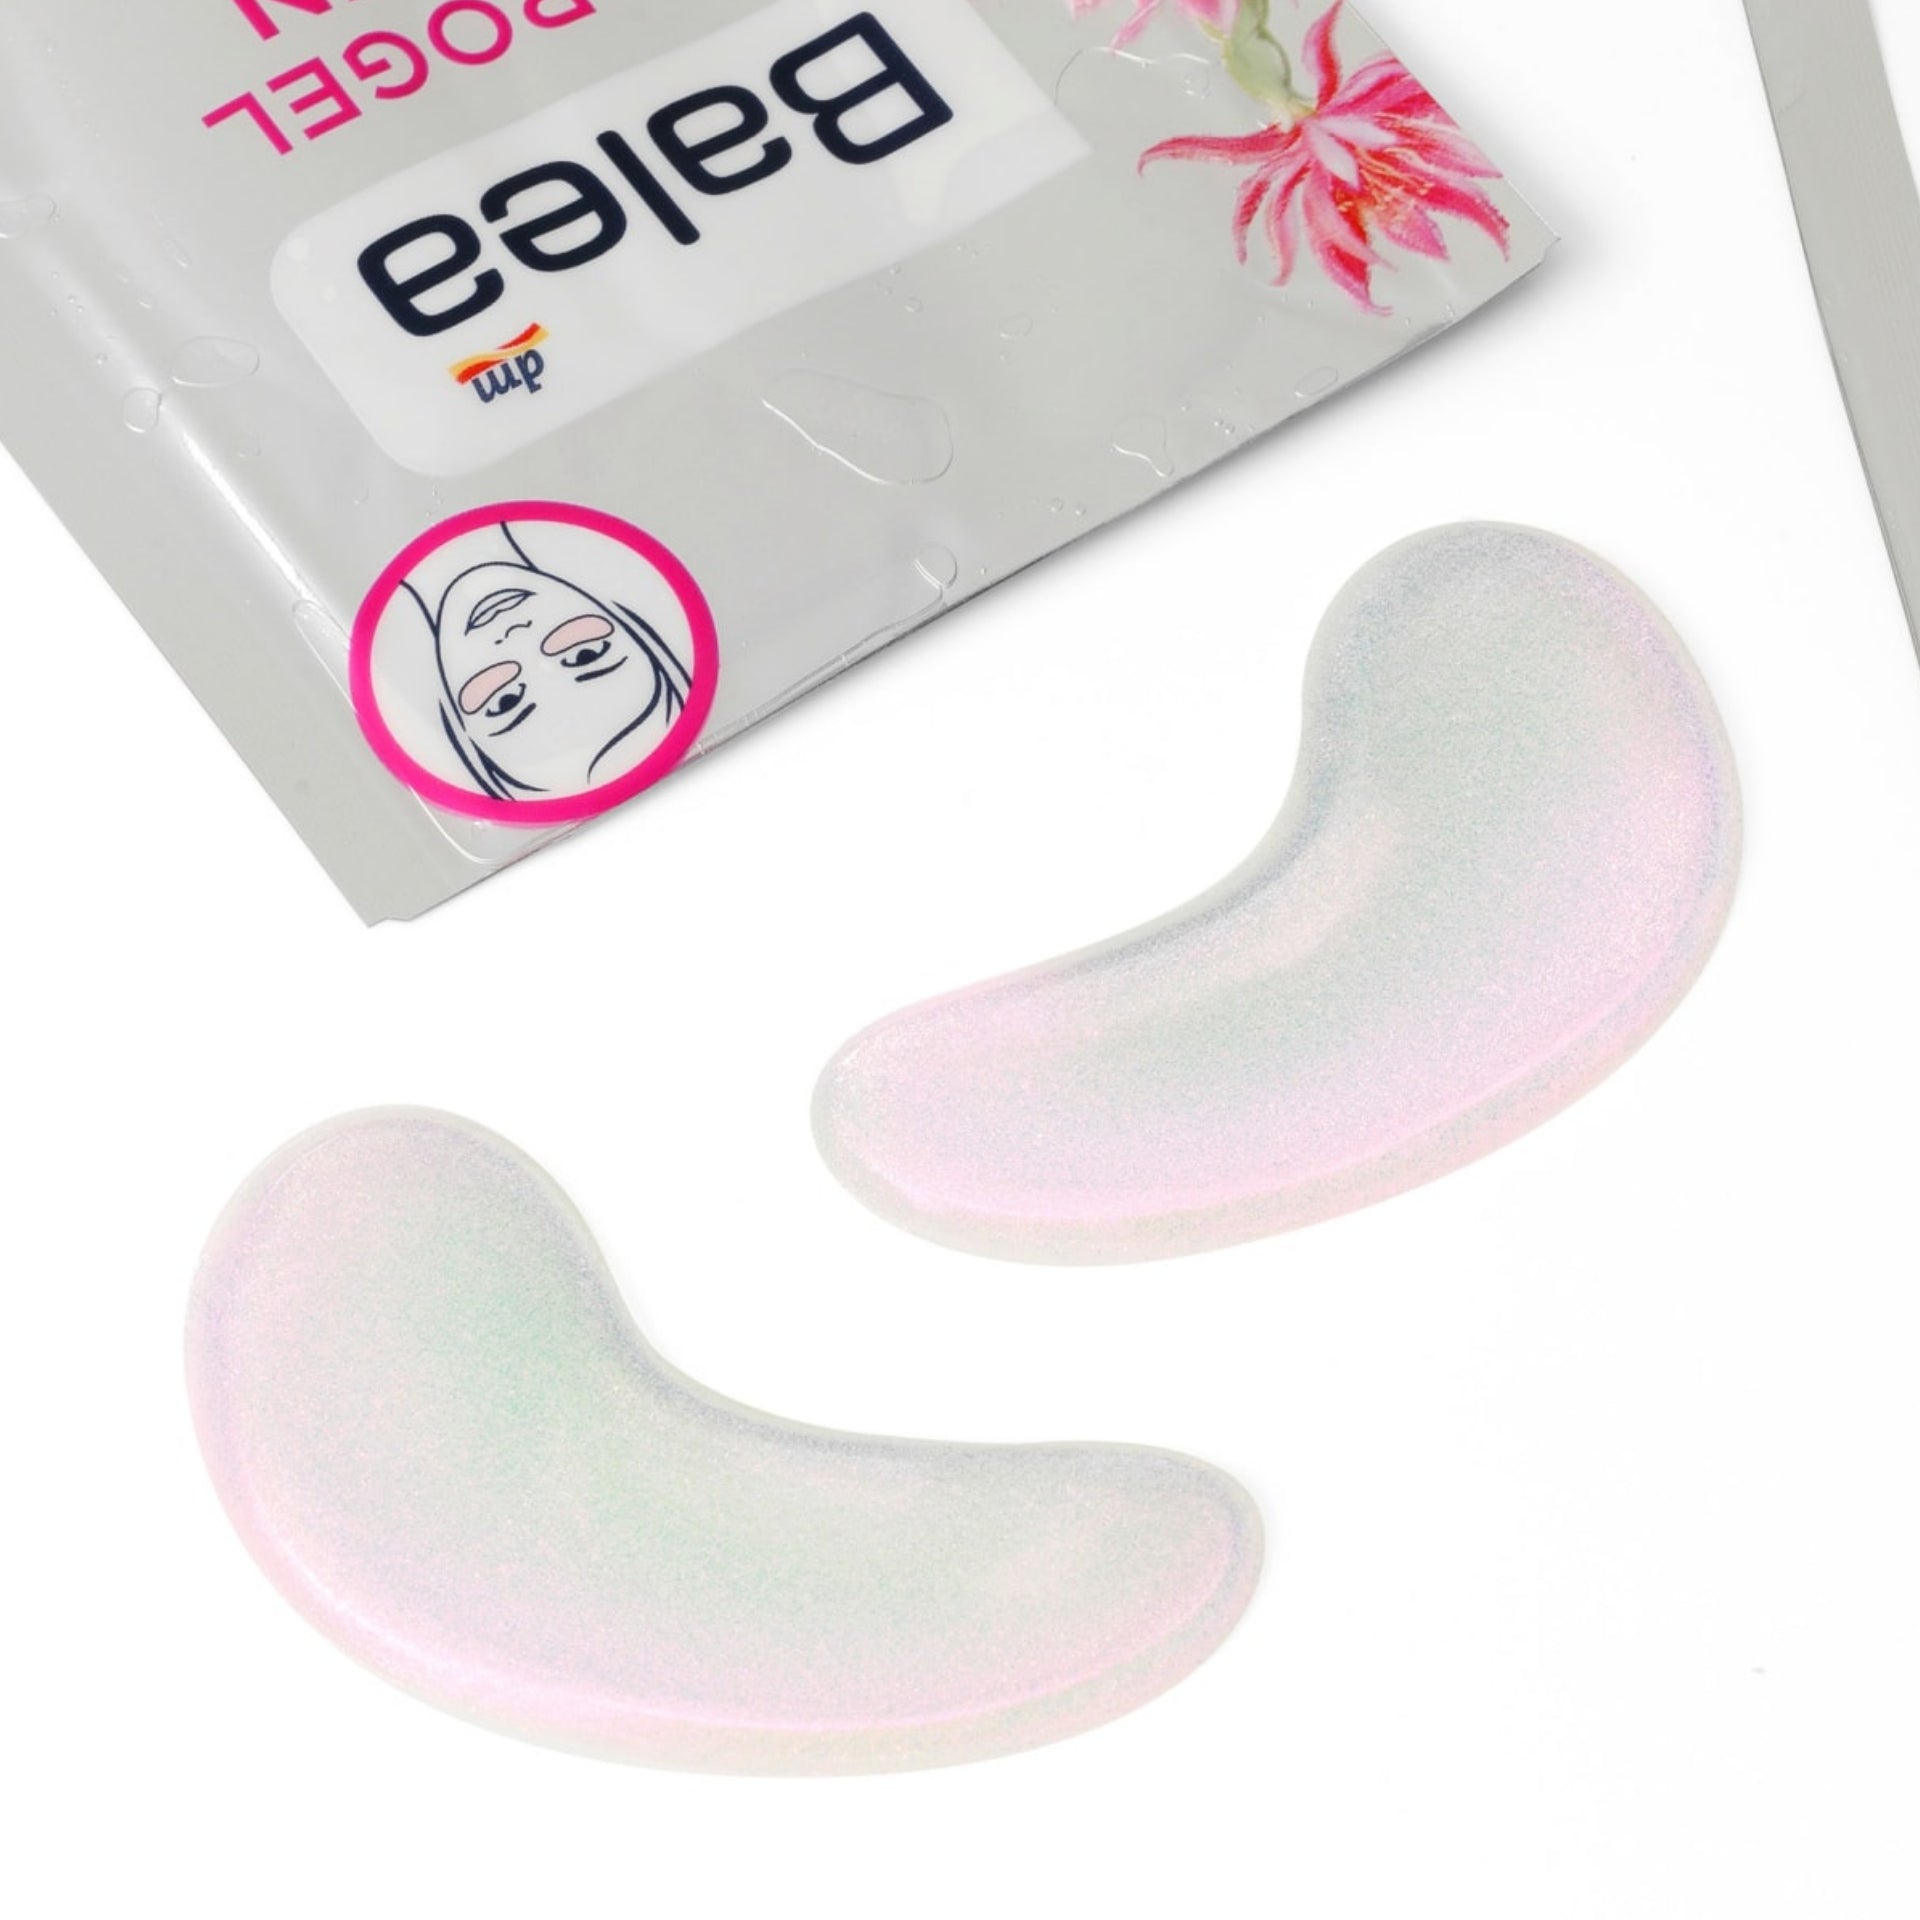 Balea Eye Pads Hydrogel Glitter, 2 pc - German Drugstore